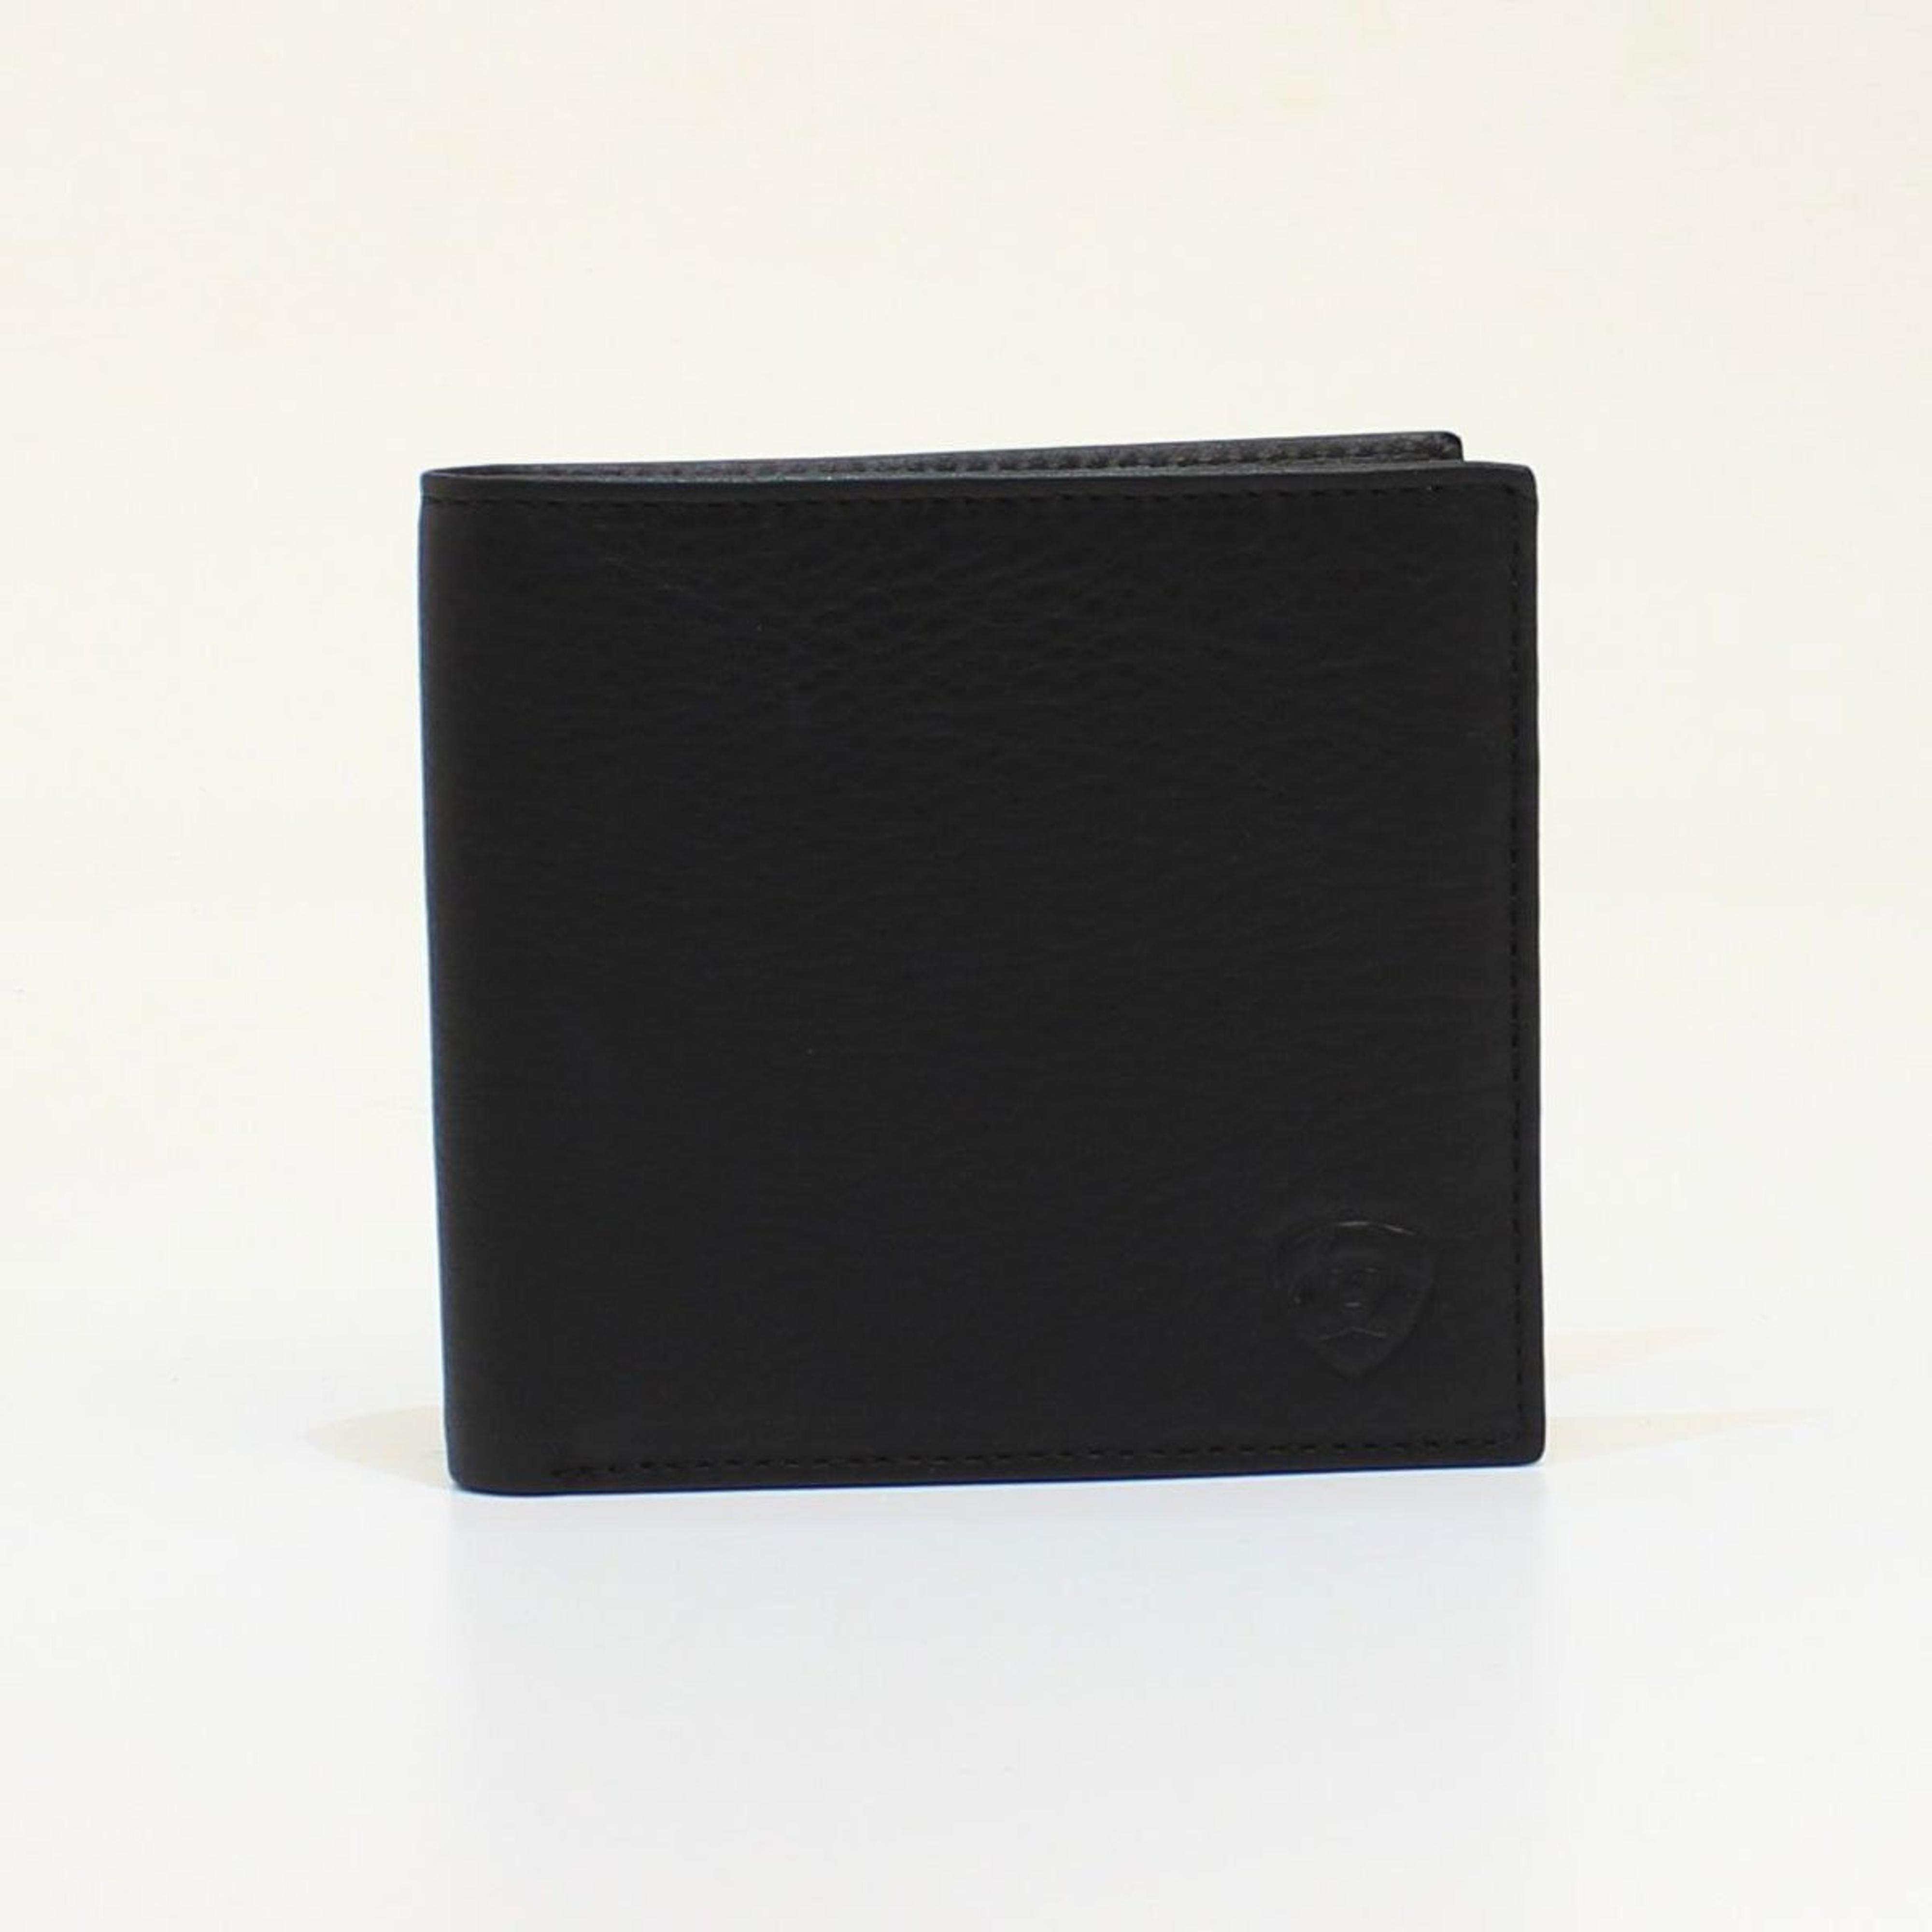  Ariat Large Bifold Black Wallet